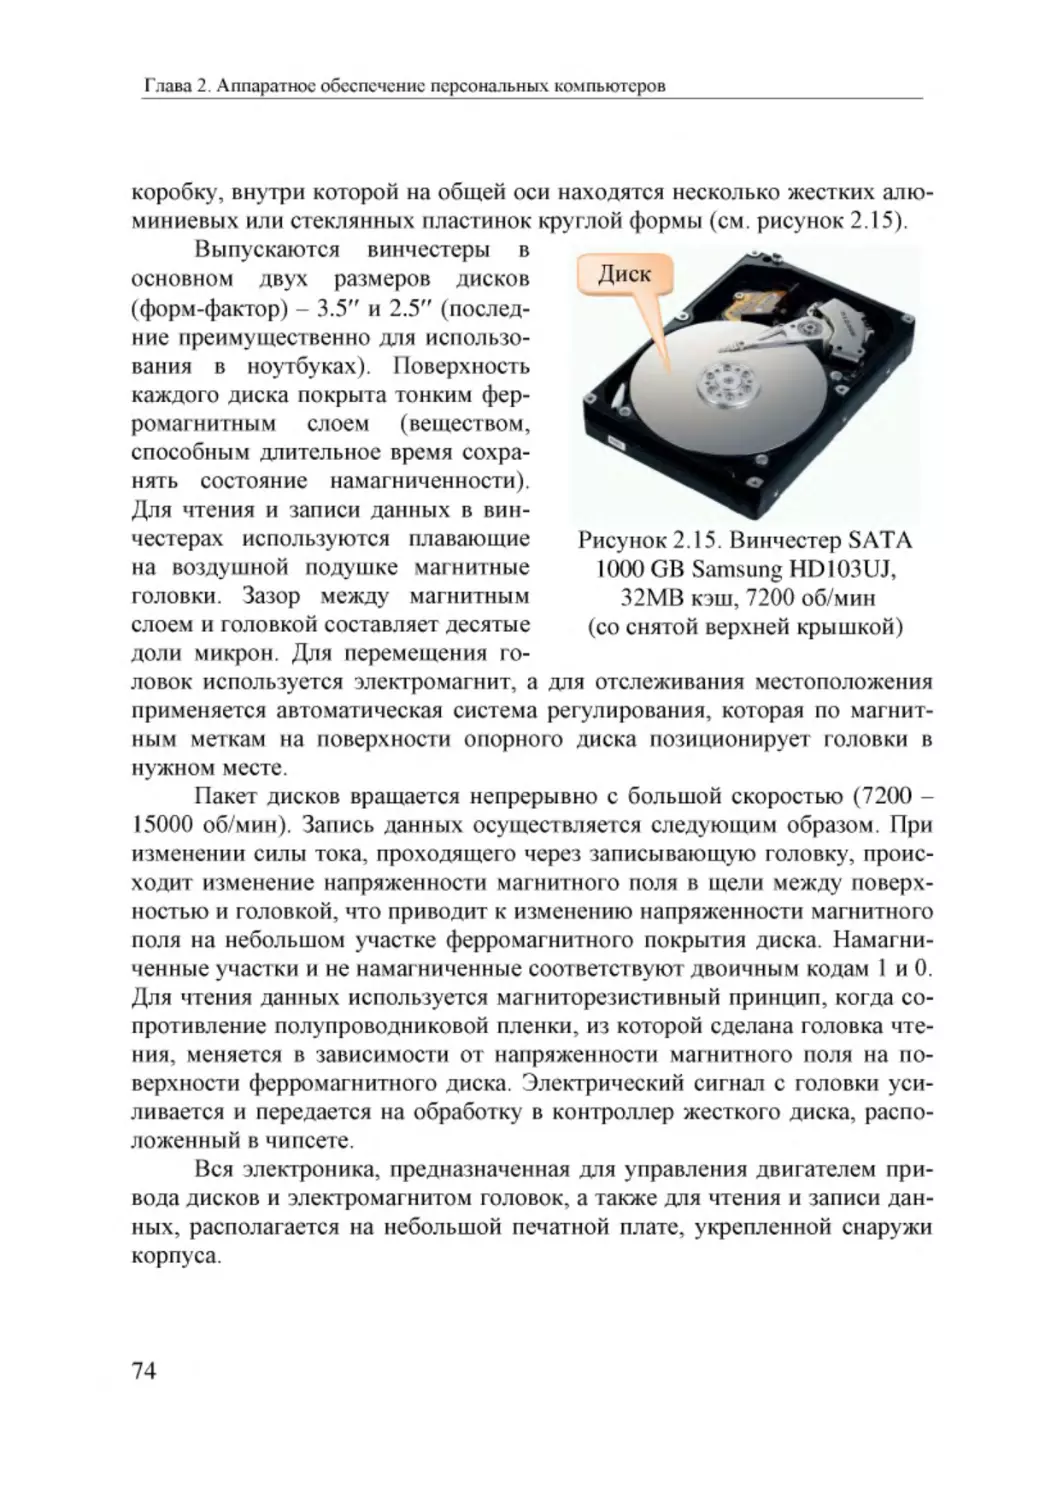 Informatika_Uchebnik_dlya_vuzov_2010 74